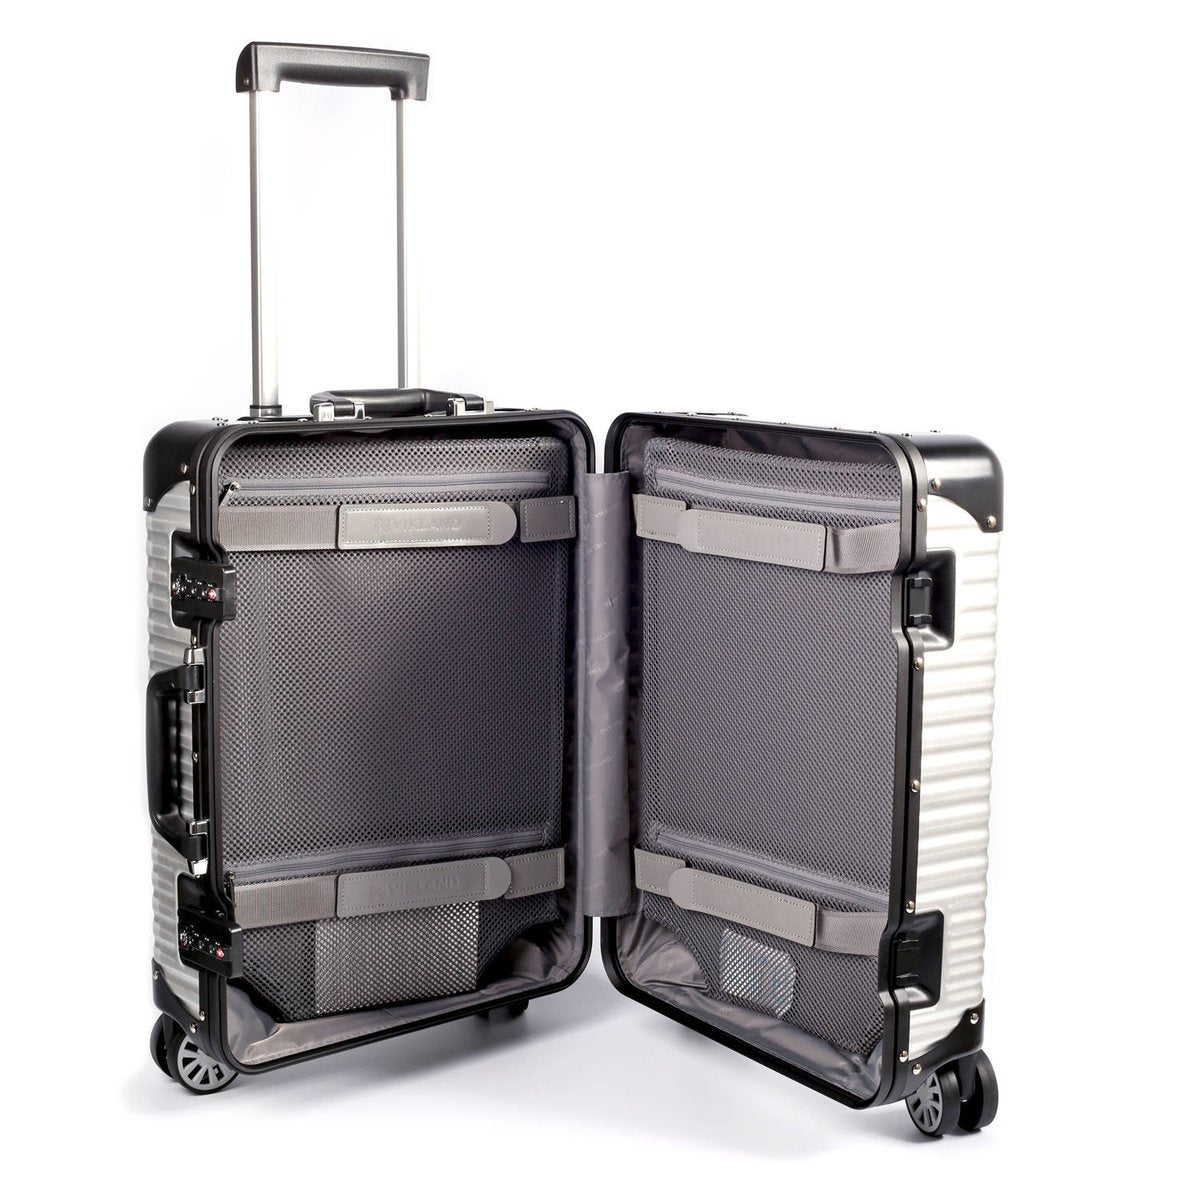 Lanzzo Norman (Silver) 62901.29 Lanzzo 諾曼系列銀白色29吋旅行行李箱 62901.29